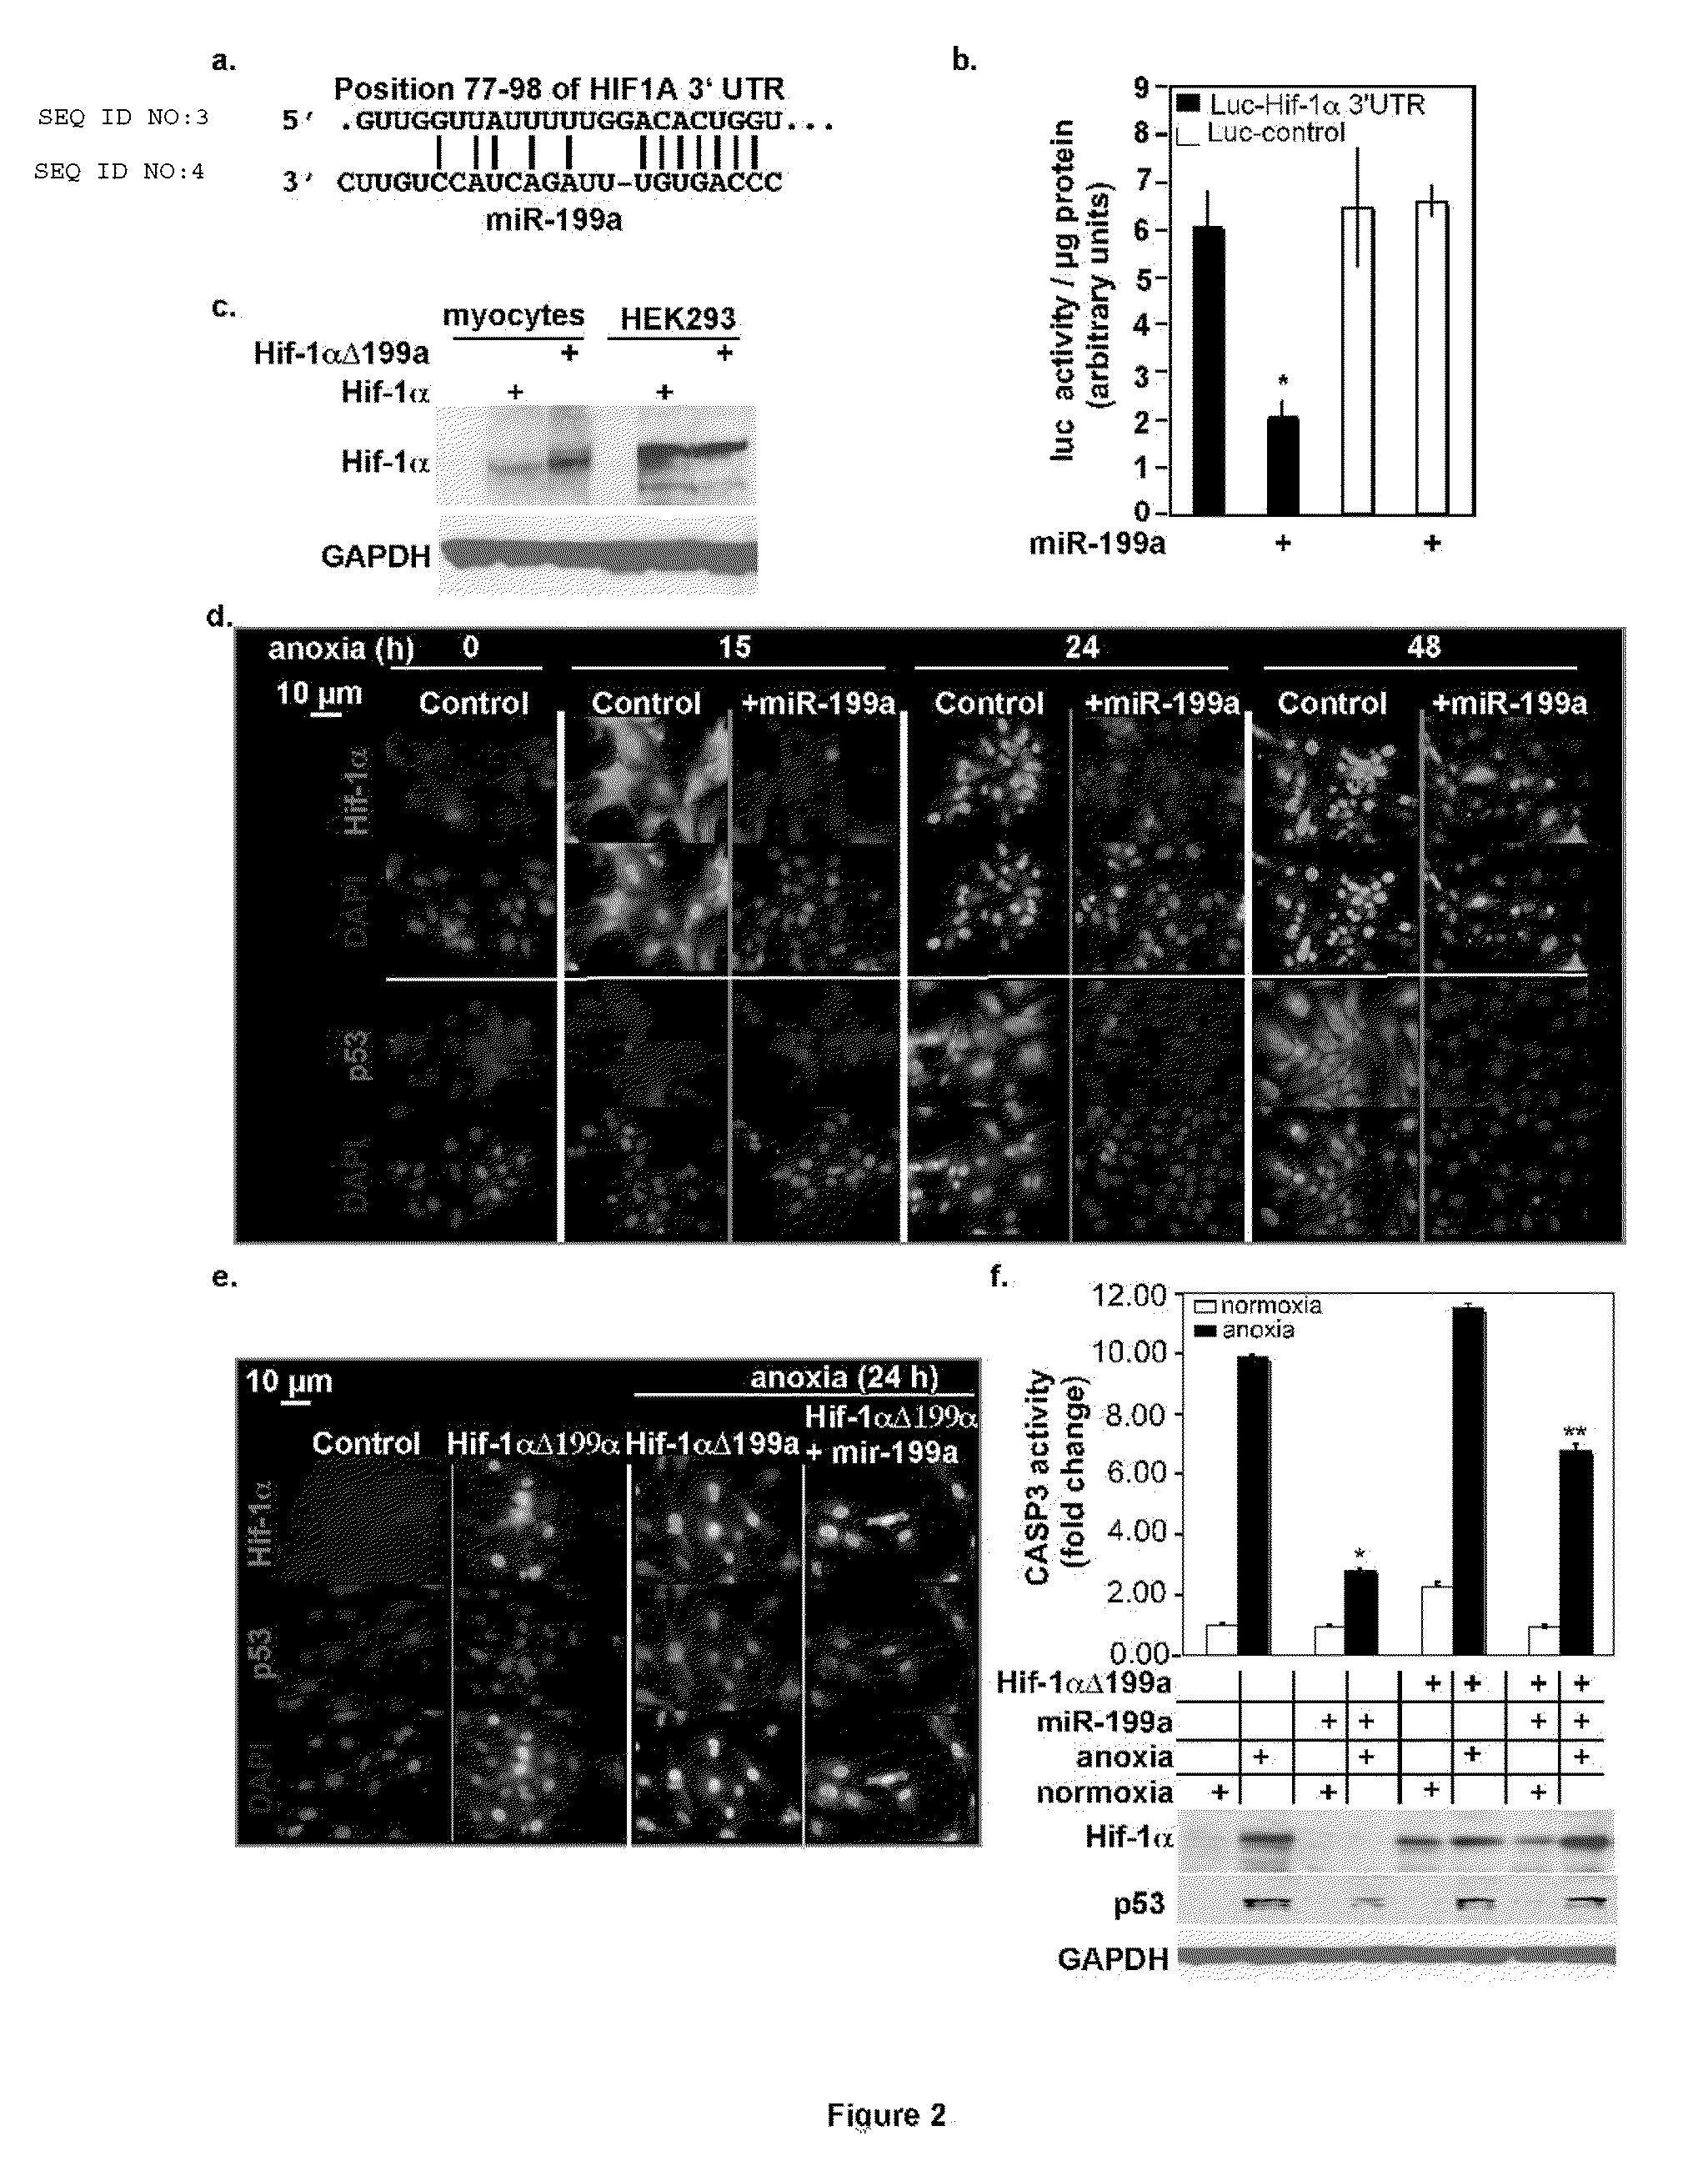 Anti-sense microrna expression vectors